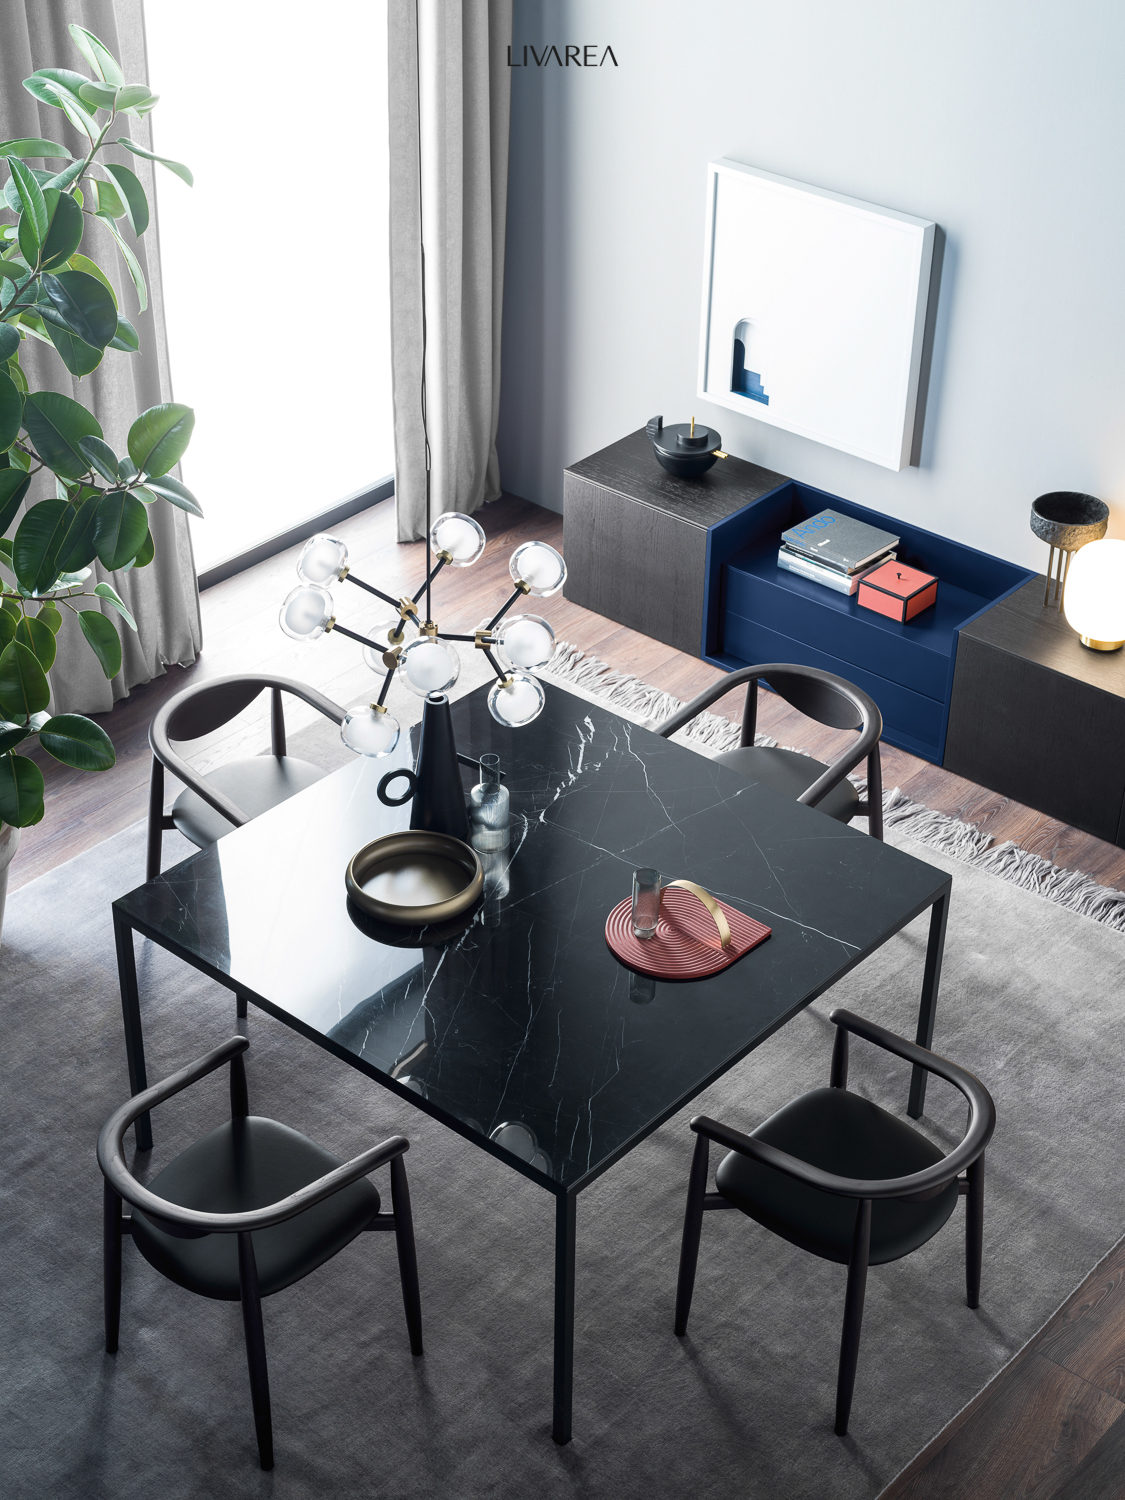 Sala da pranzo moderna di design con tavolo da pranzo in marmo, quattro sedie da pranzo e un'insolita credenza